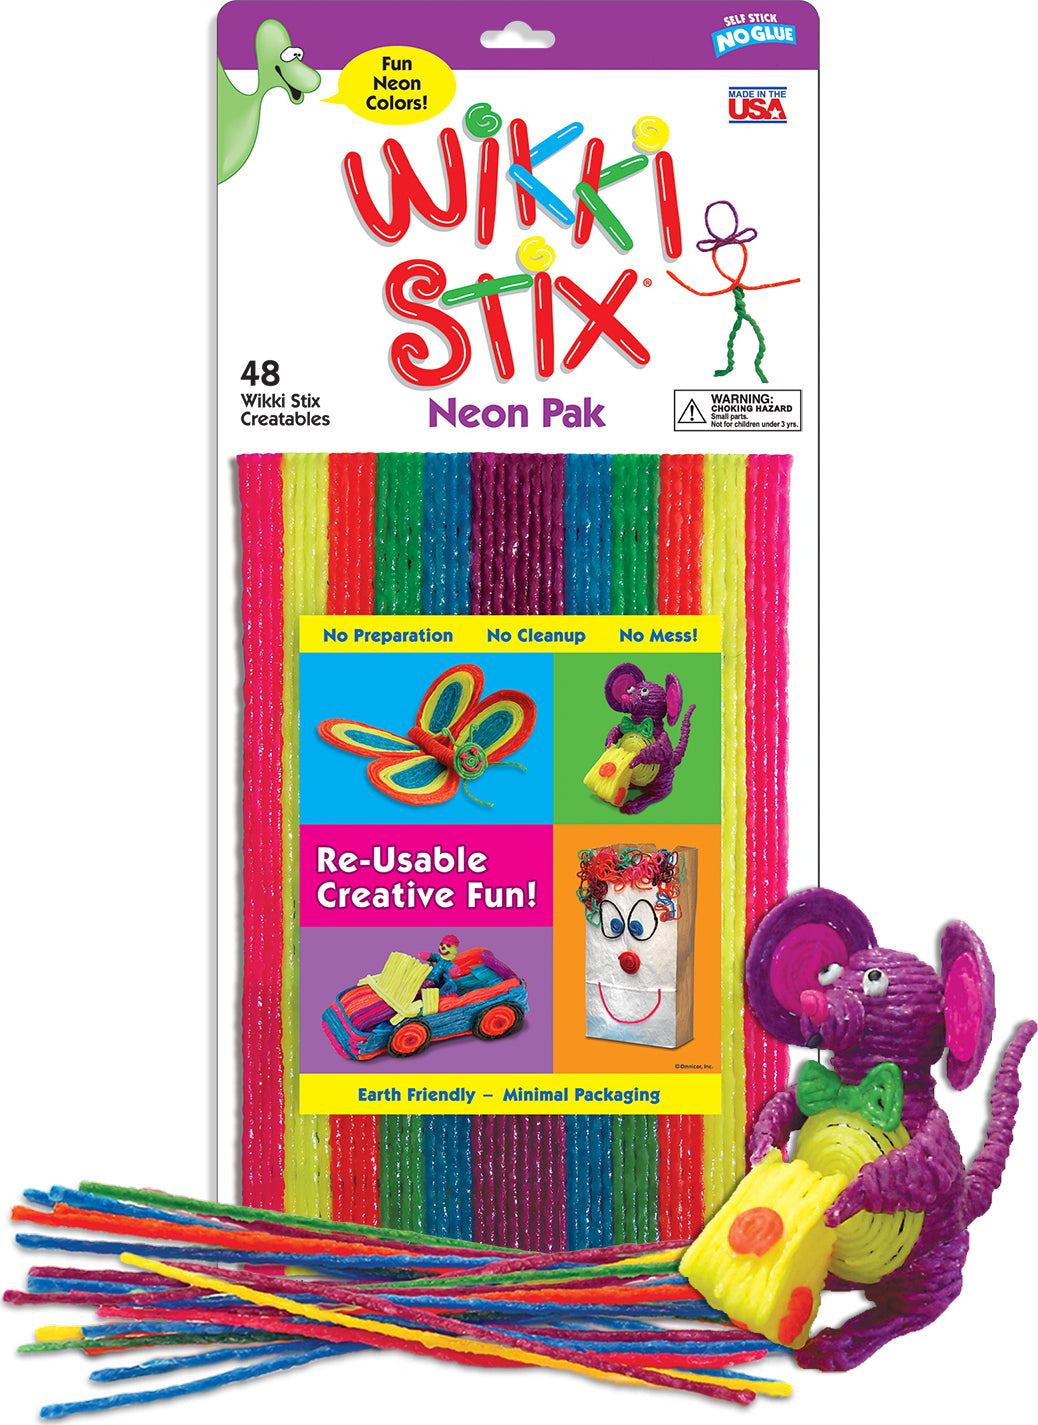 Wikki Stix Neon Pack – Turner Toys